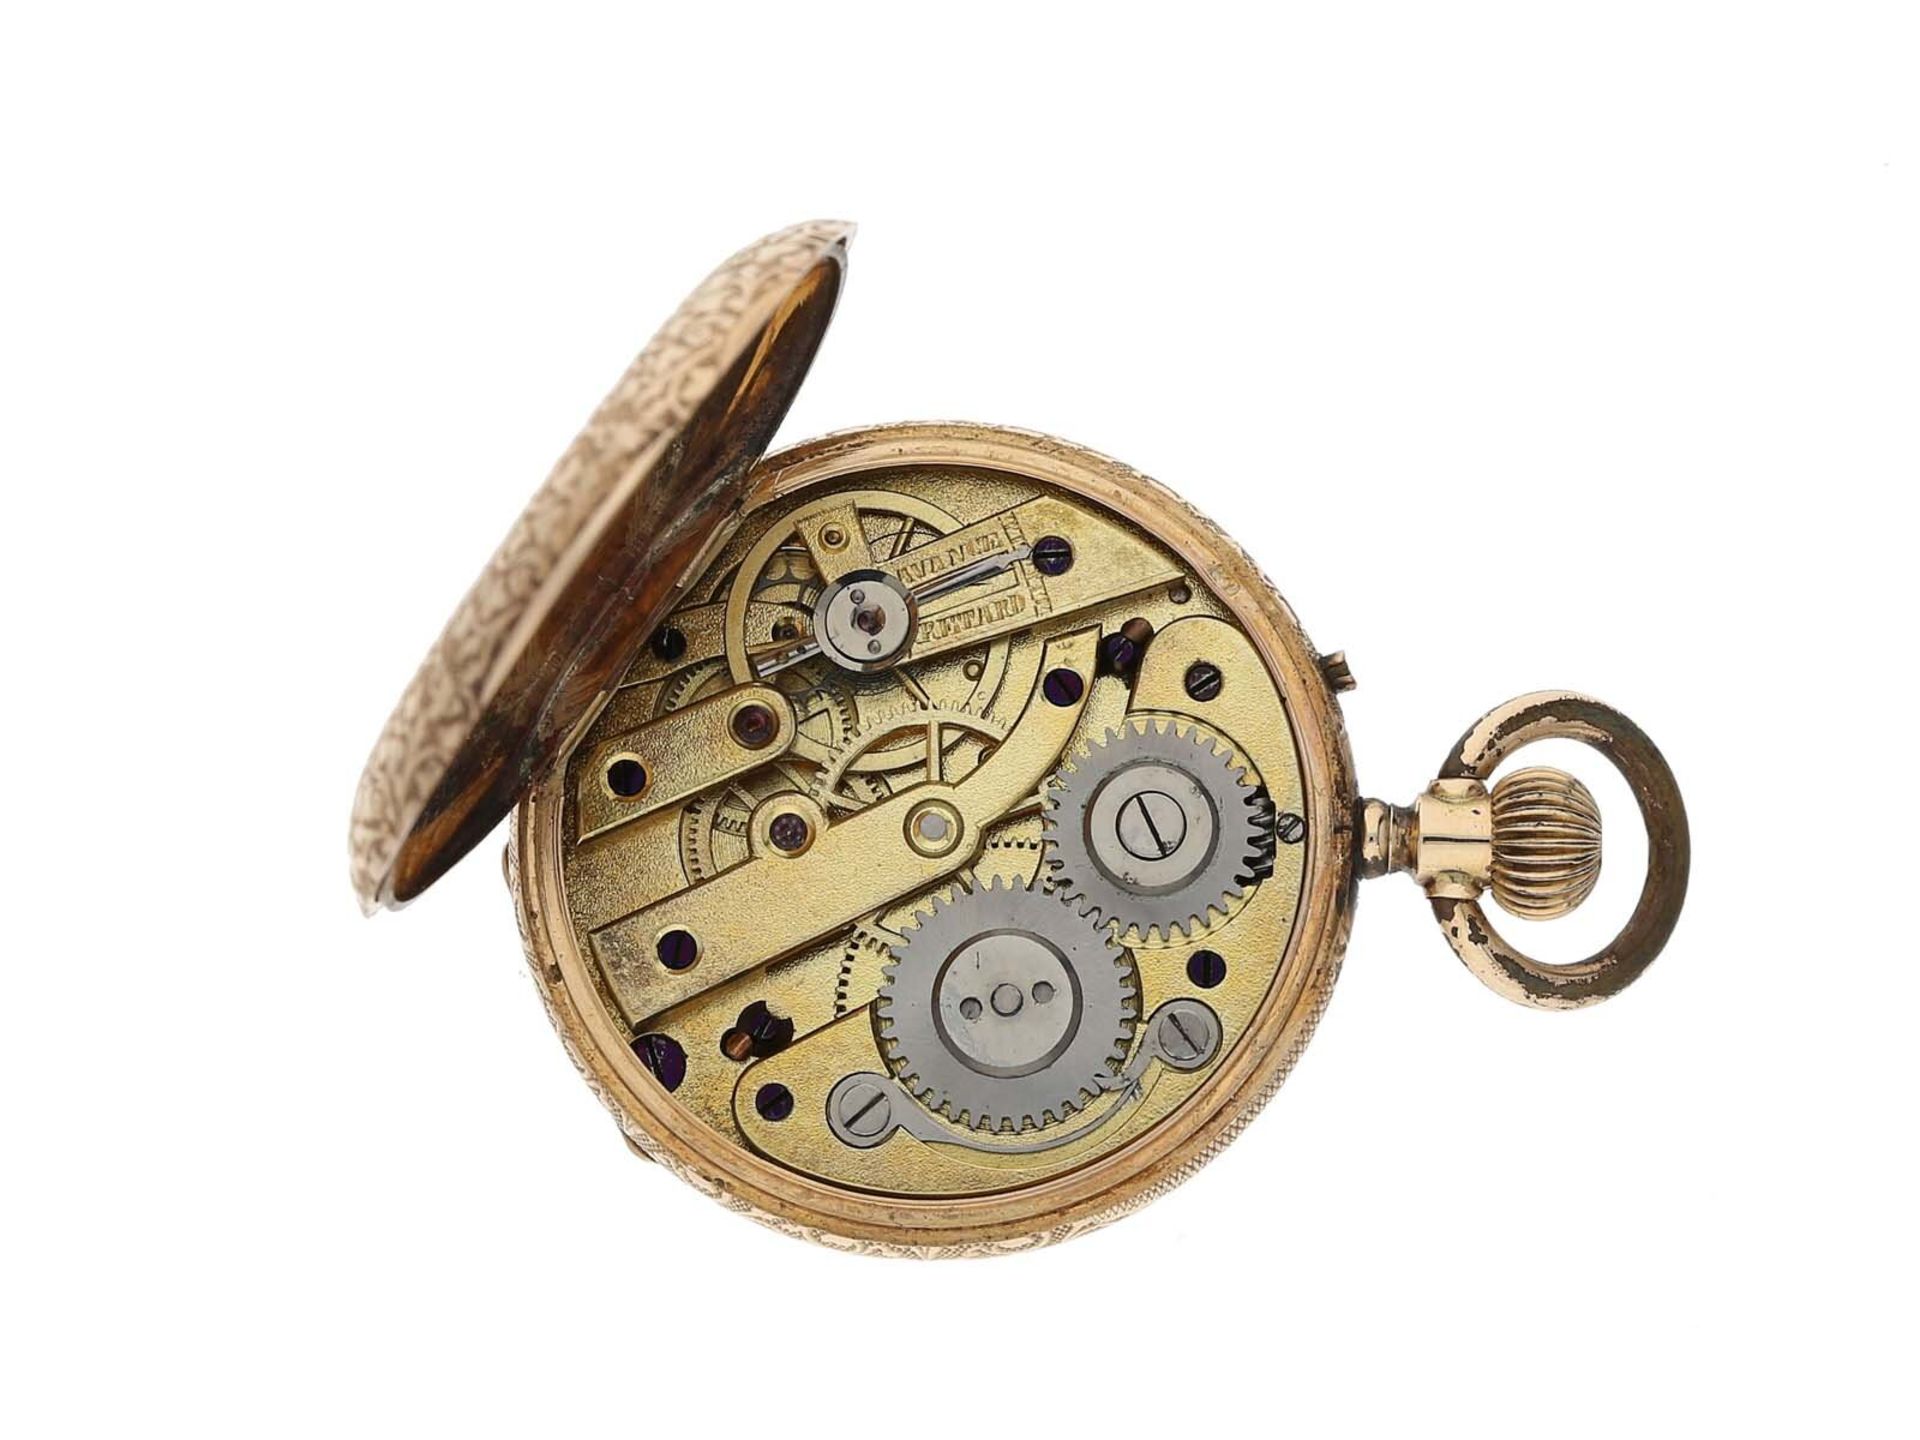 Taschenuhr: goldene Damenuhr um 1900 und seltene goldene Uhrenkette mit goldenem Kompass, ca.1900 - Bild 3 aus 3